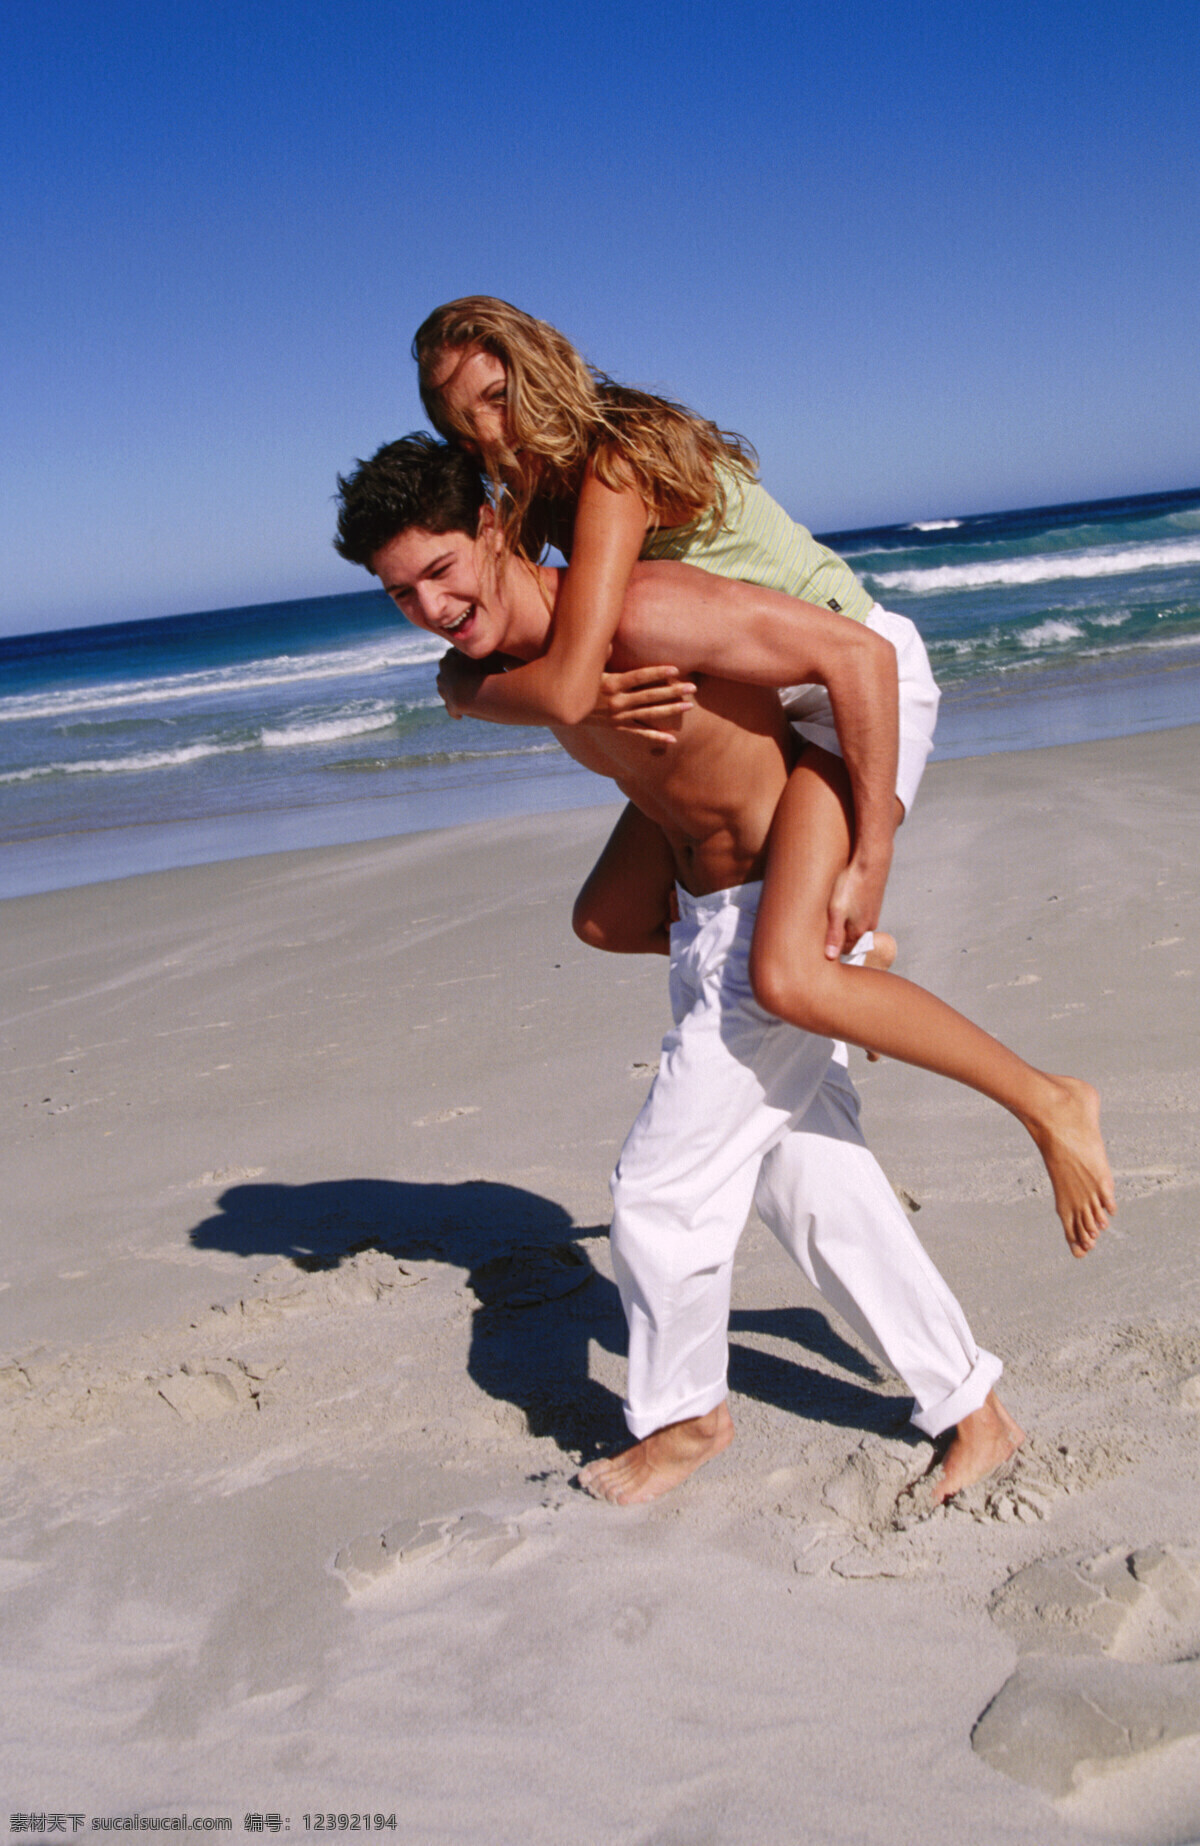 海边 浪漫 情侣 高清 爱人 伴侣 度假 海滩